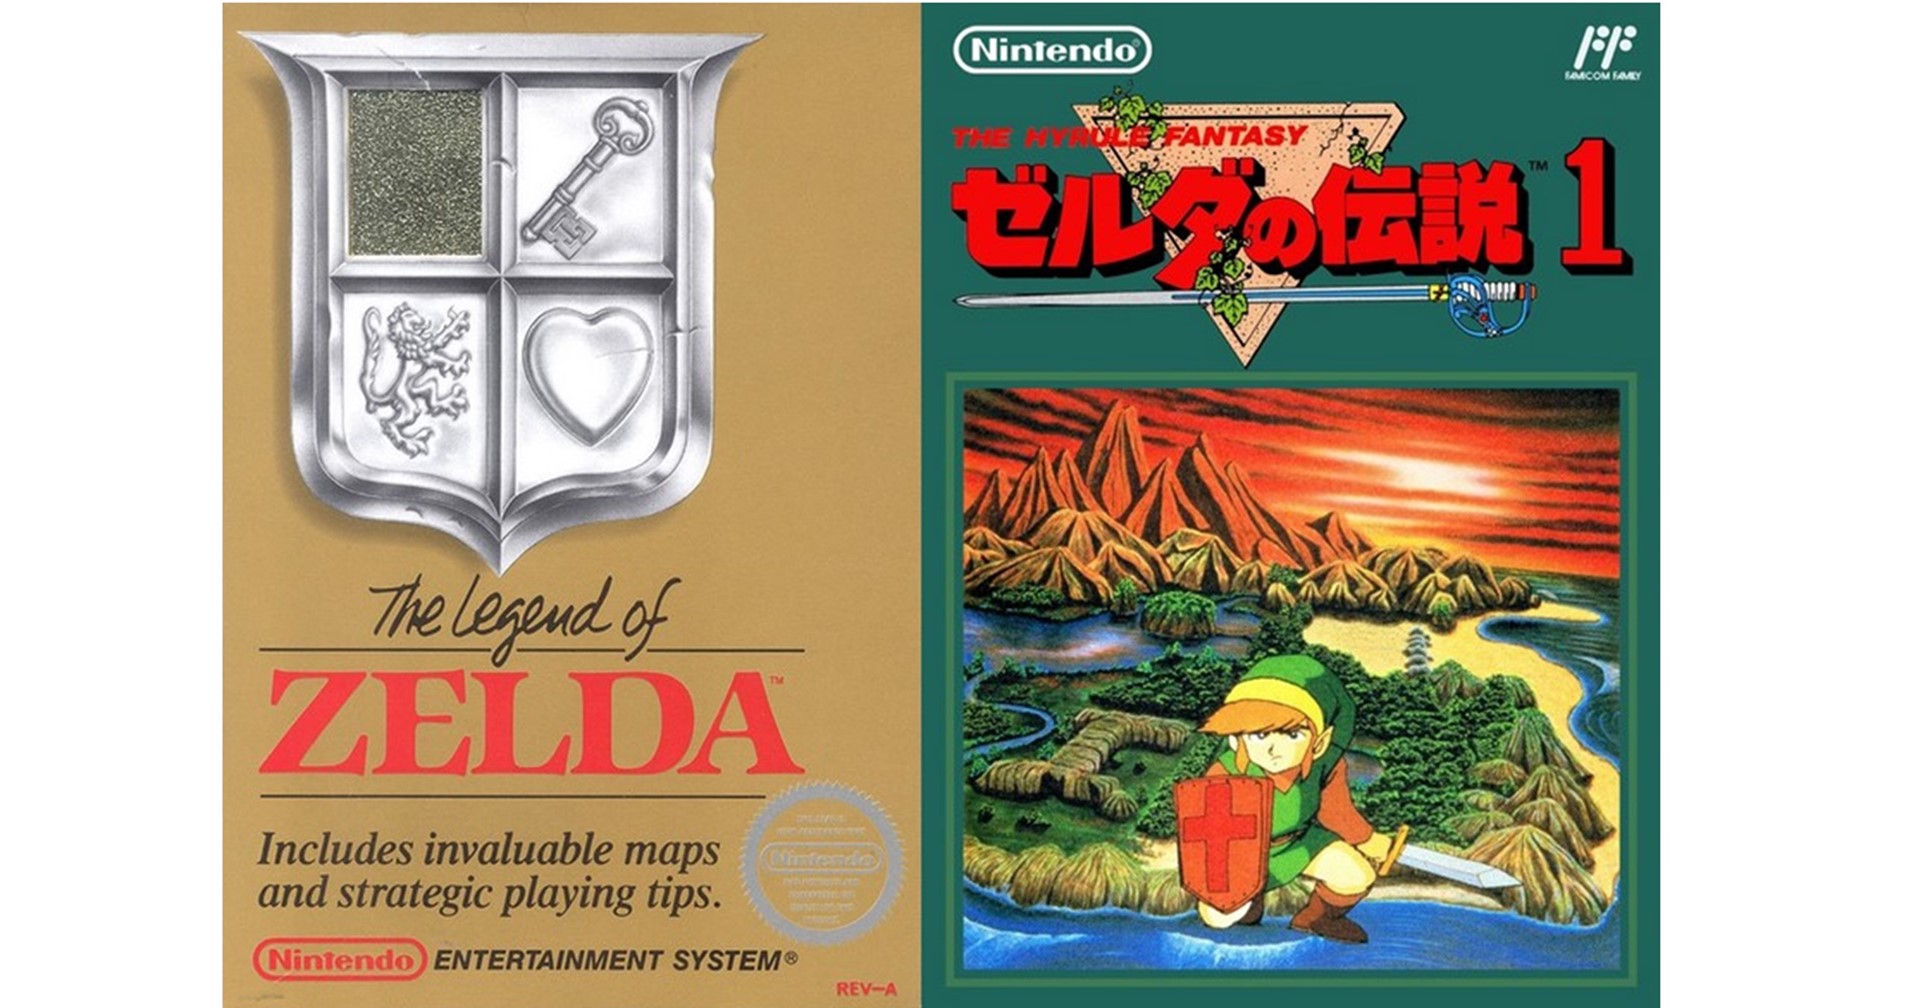 หลุดภาพกล่องเกม Zelda ภาคแรกบน แฟมิคอม ที่ไม่ถูกใช้งาน